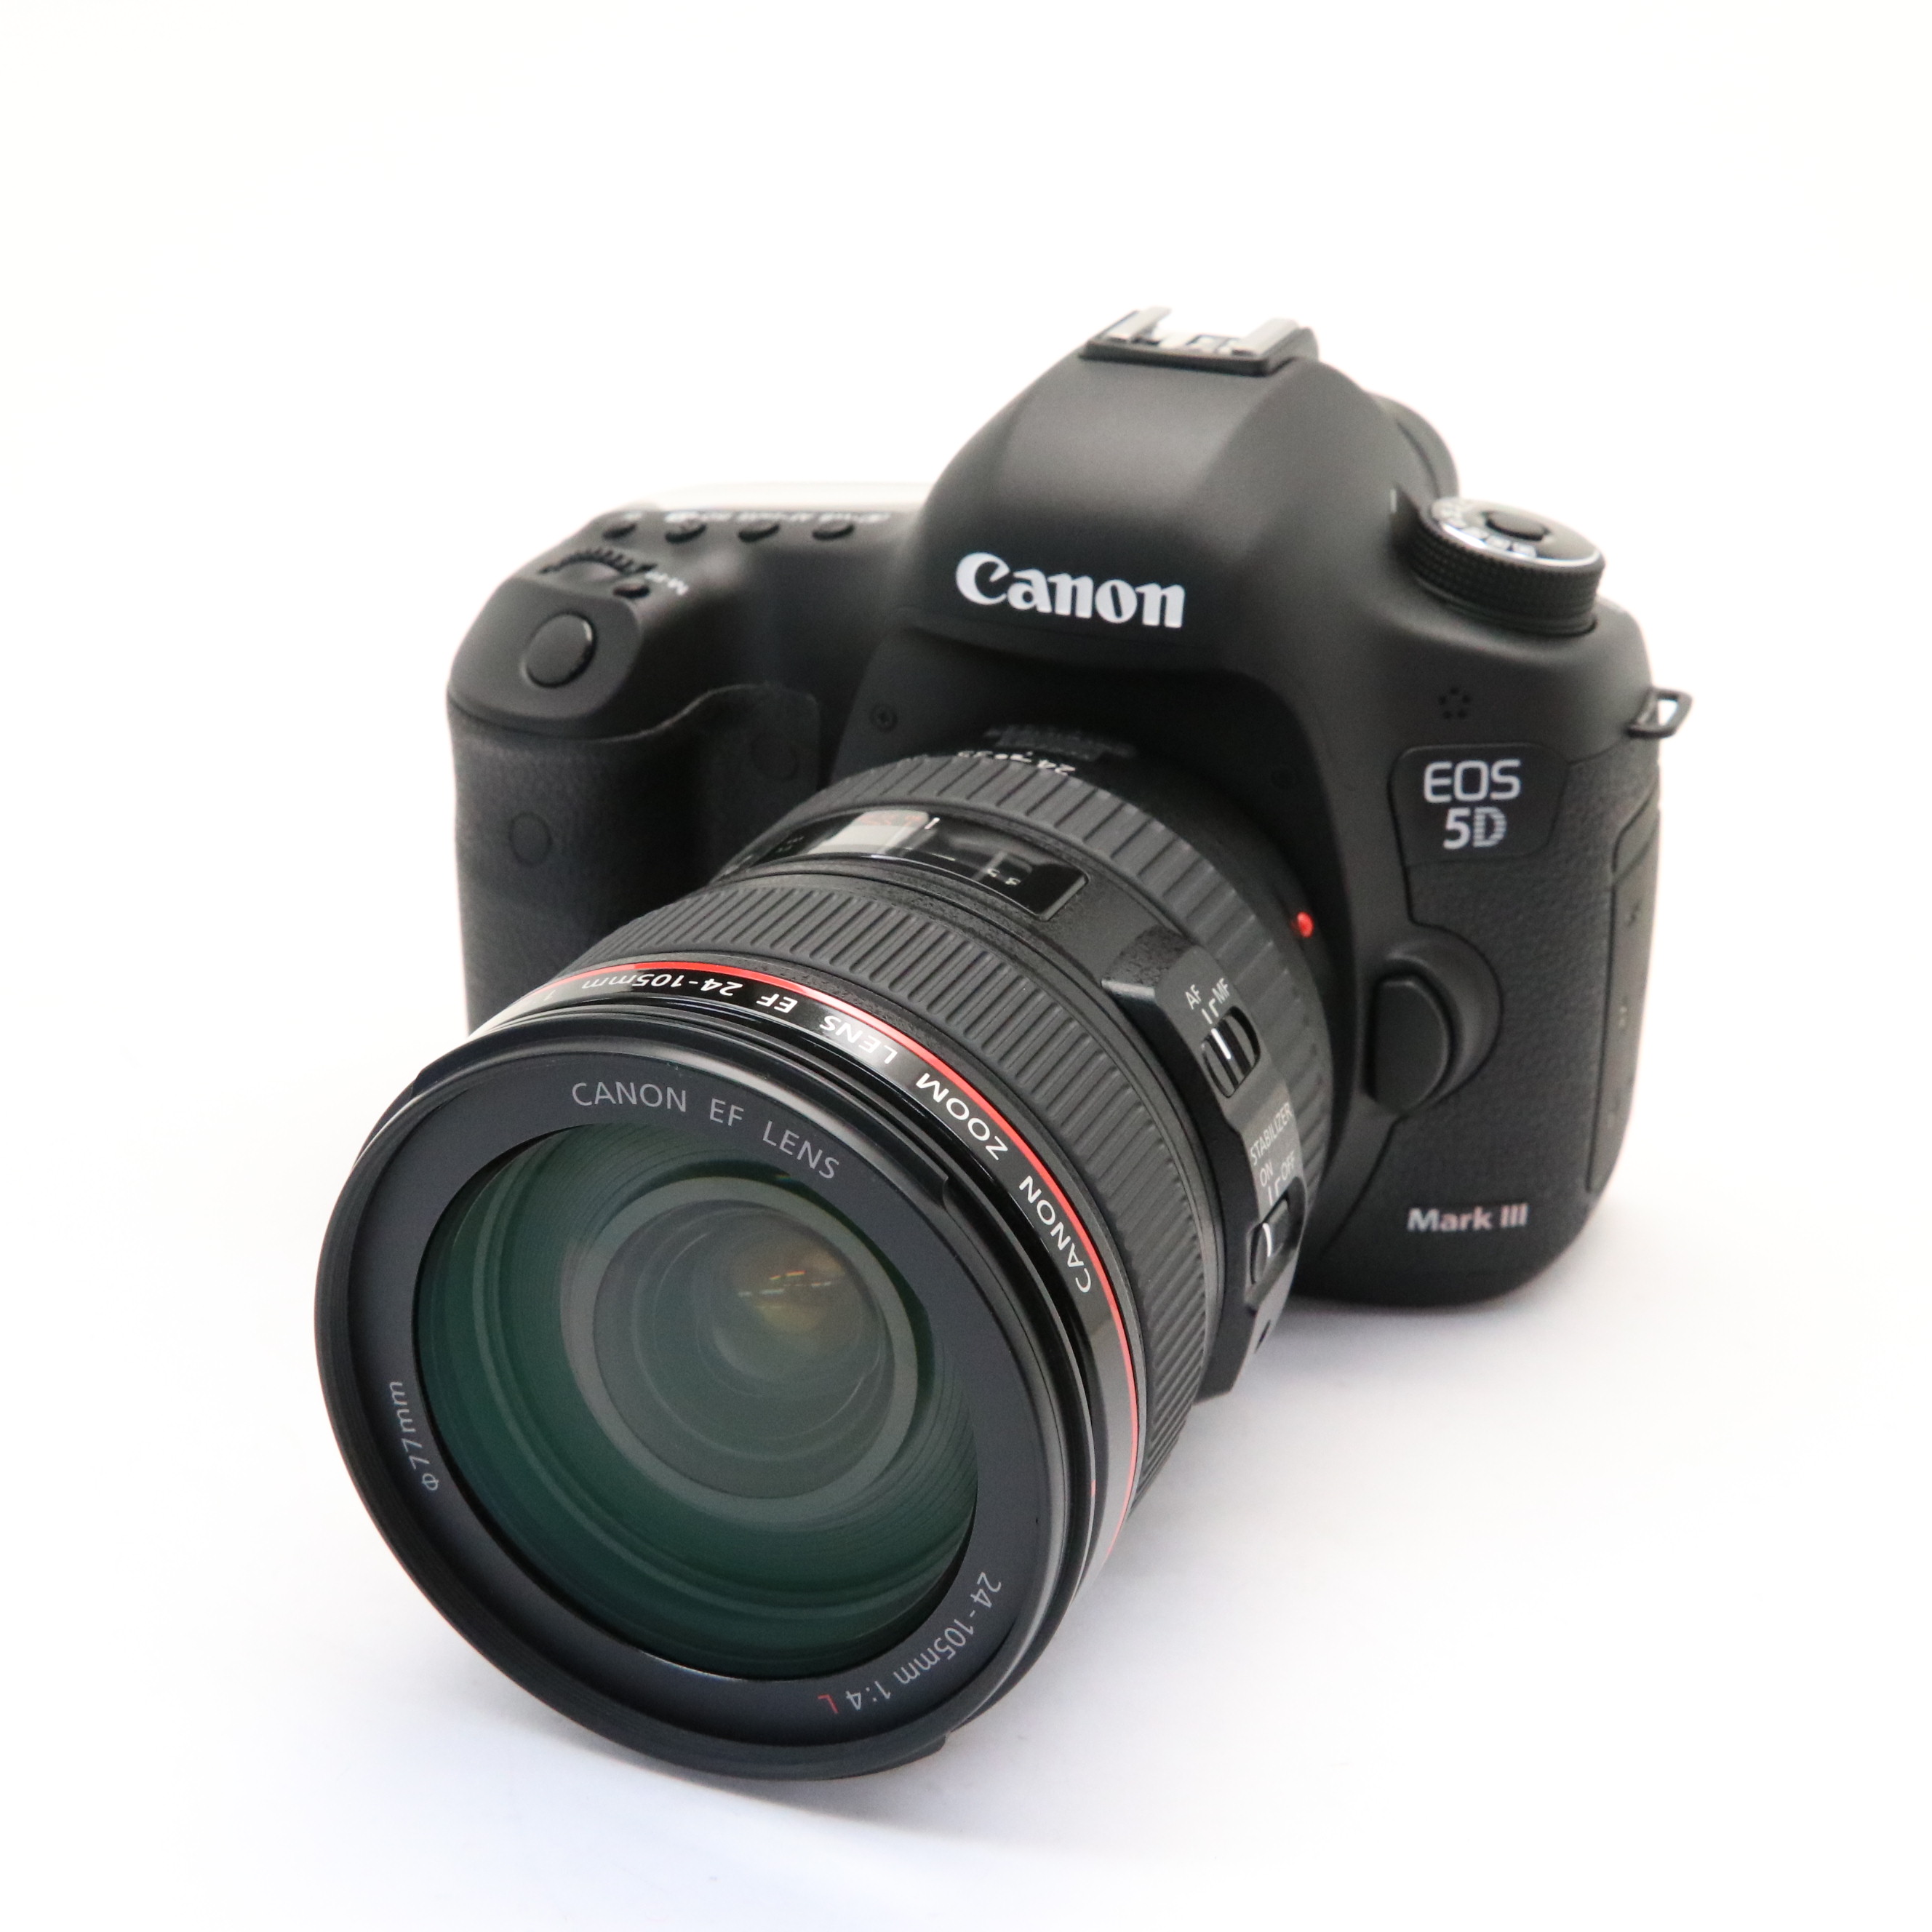 Canon EOS 5D Mark III EF24105L IS U Lens Kit Near Mint